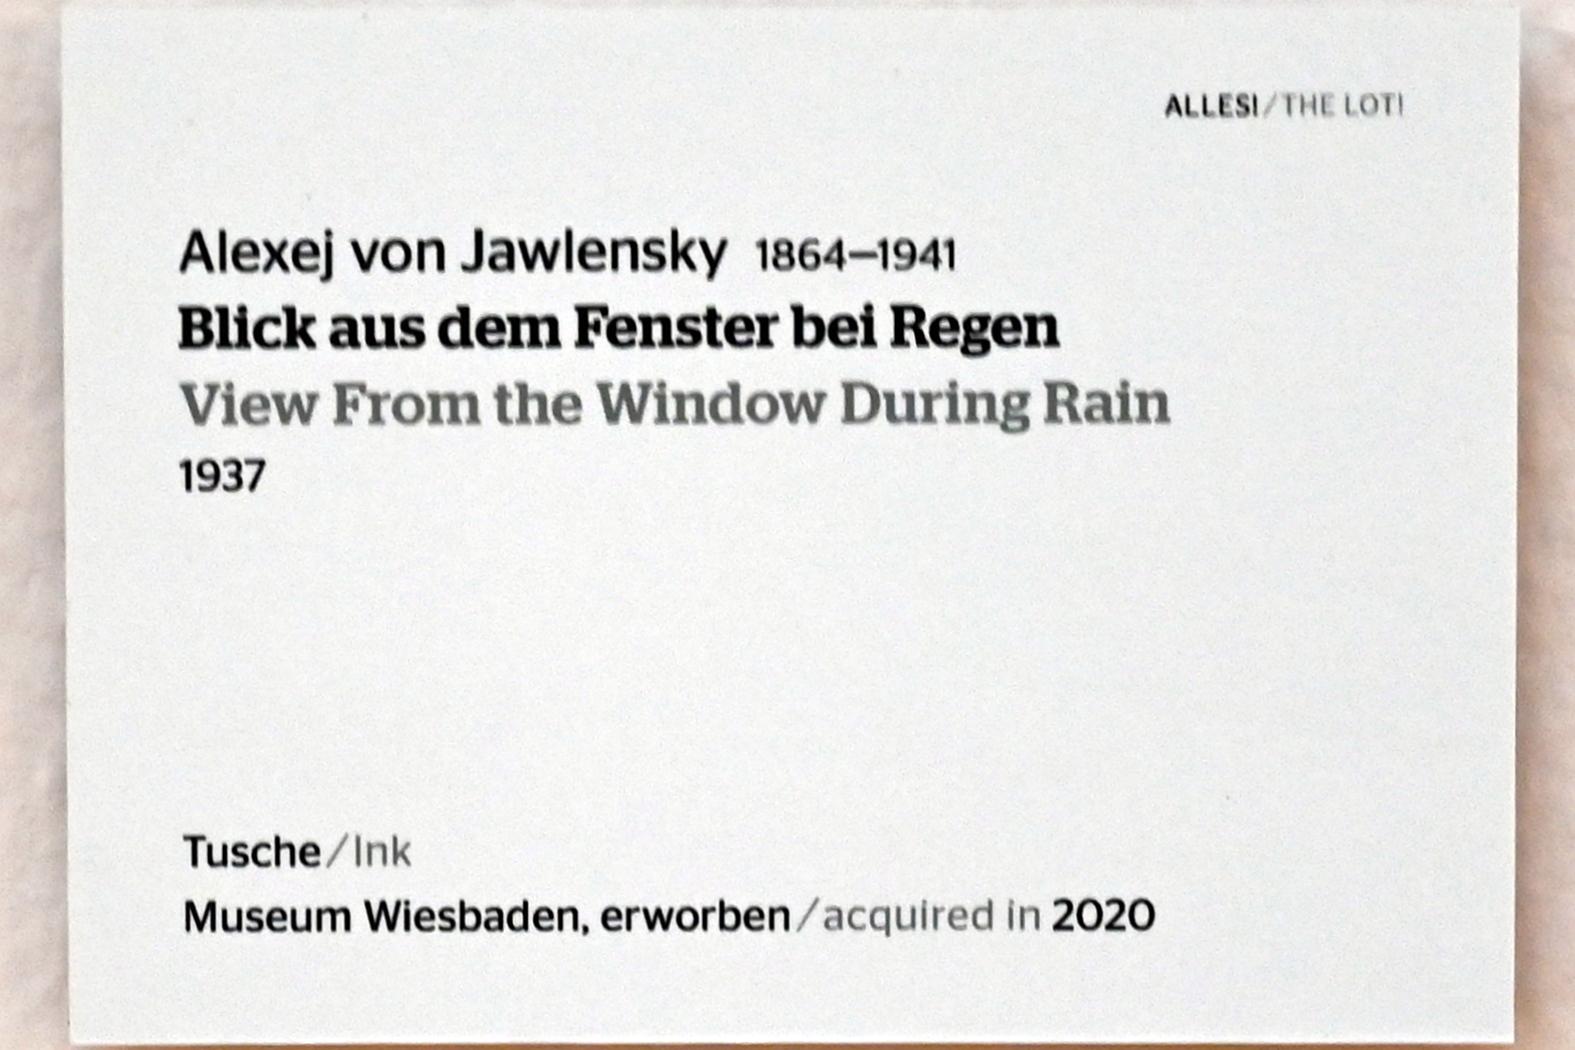 Alexej von Jawlensky (1893–1938), Blick aus dem Fenster bei Regen, Wiesbaden, Museum Wiesbaden, Ausstellung "Alles! 100 Jahre Jawlensky in Wiesbaden" vom 17.09.-26.06.2022, Saal 15, 1937, Bild 2/2